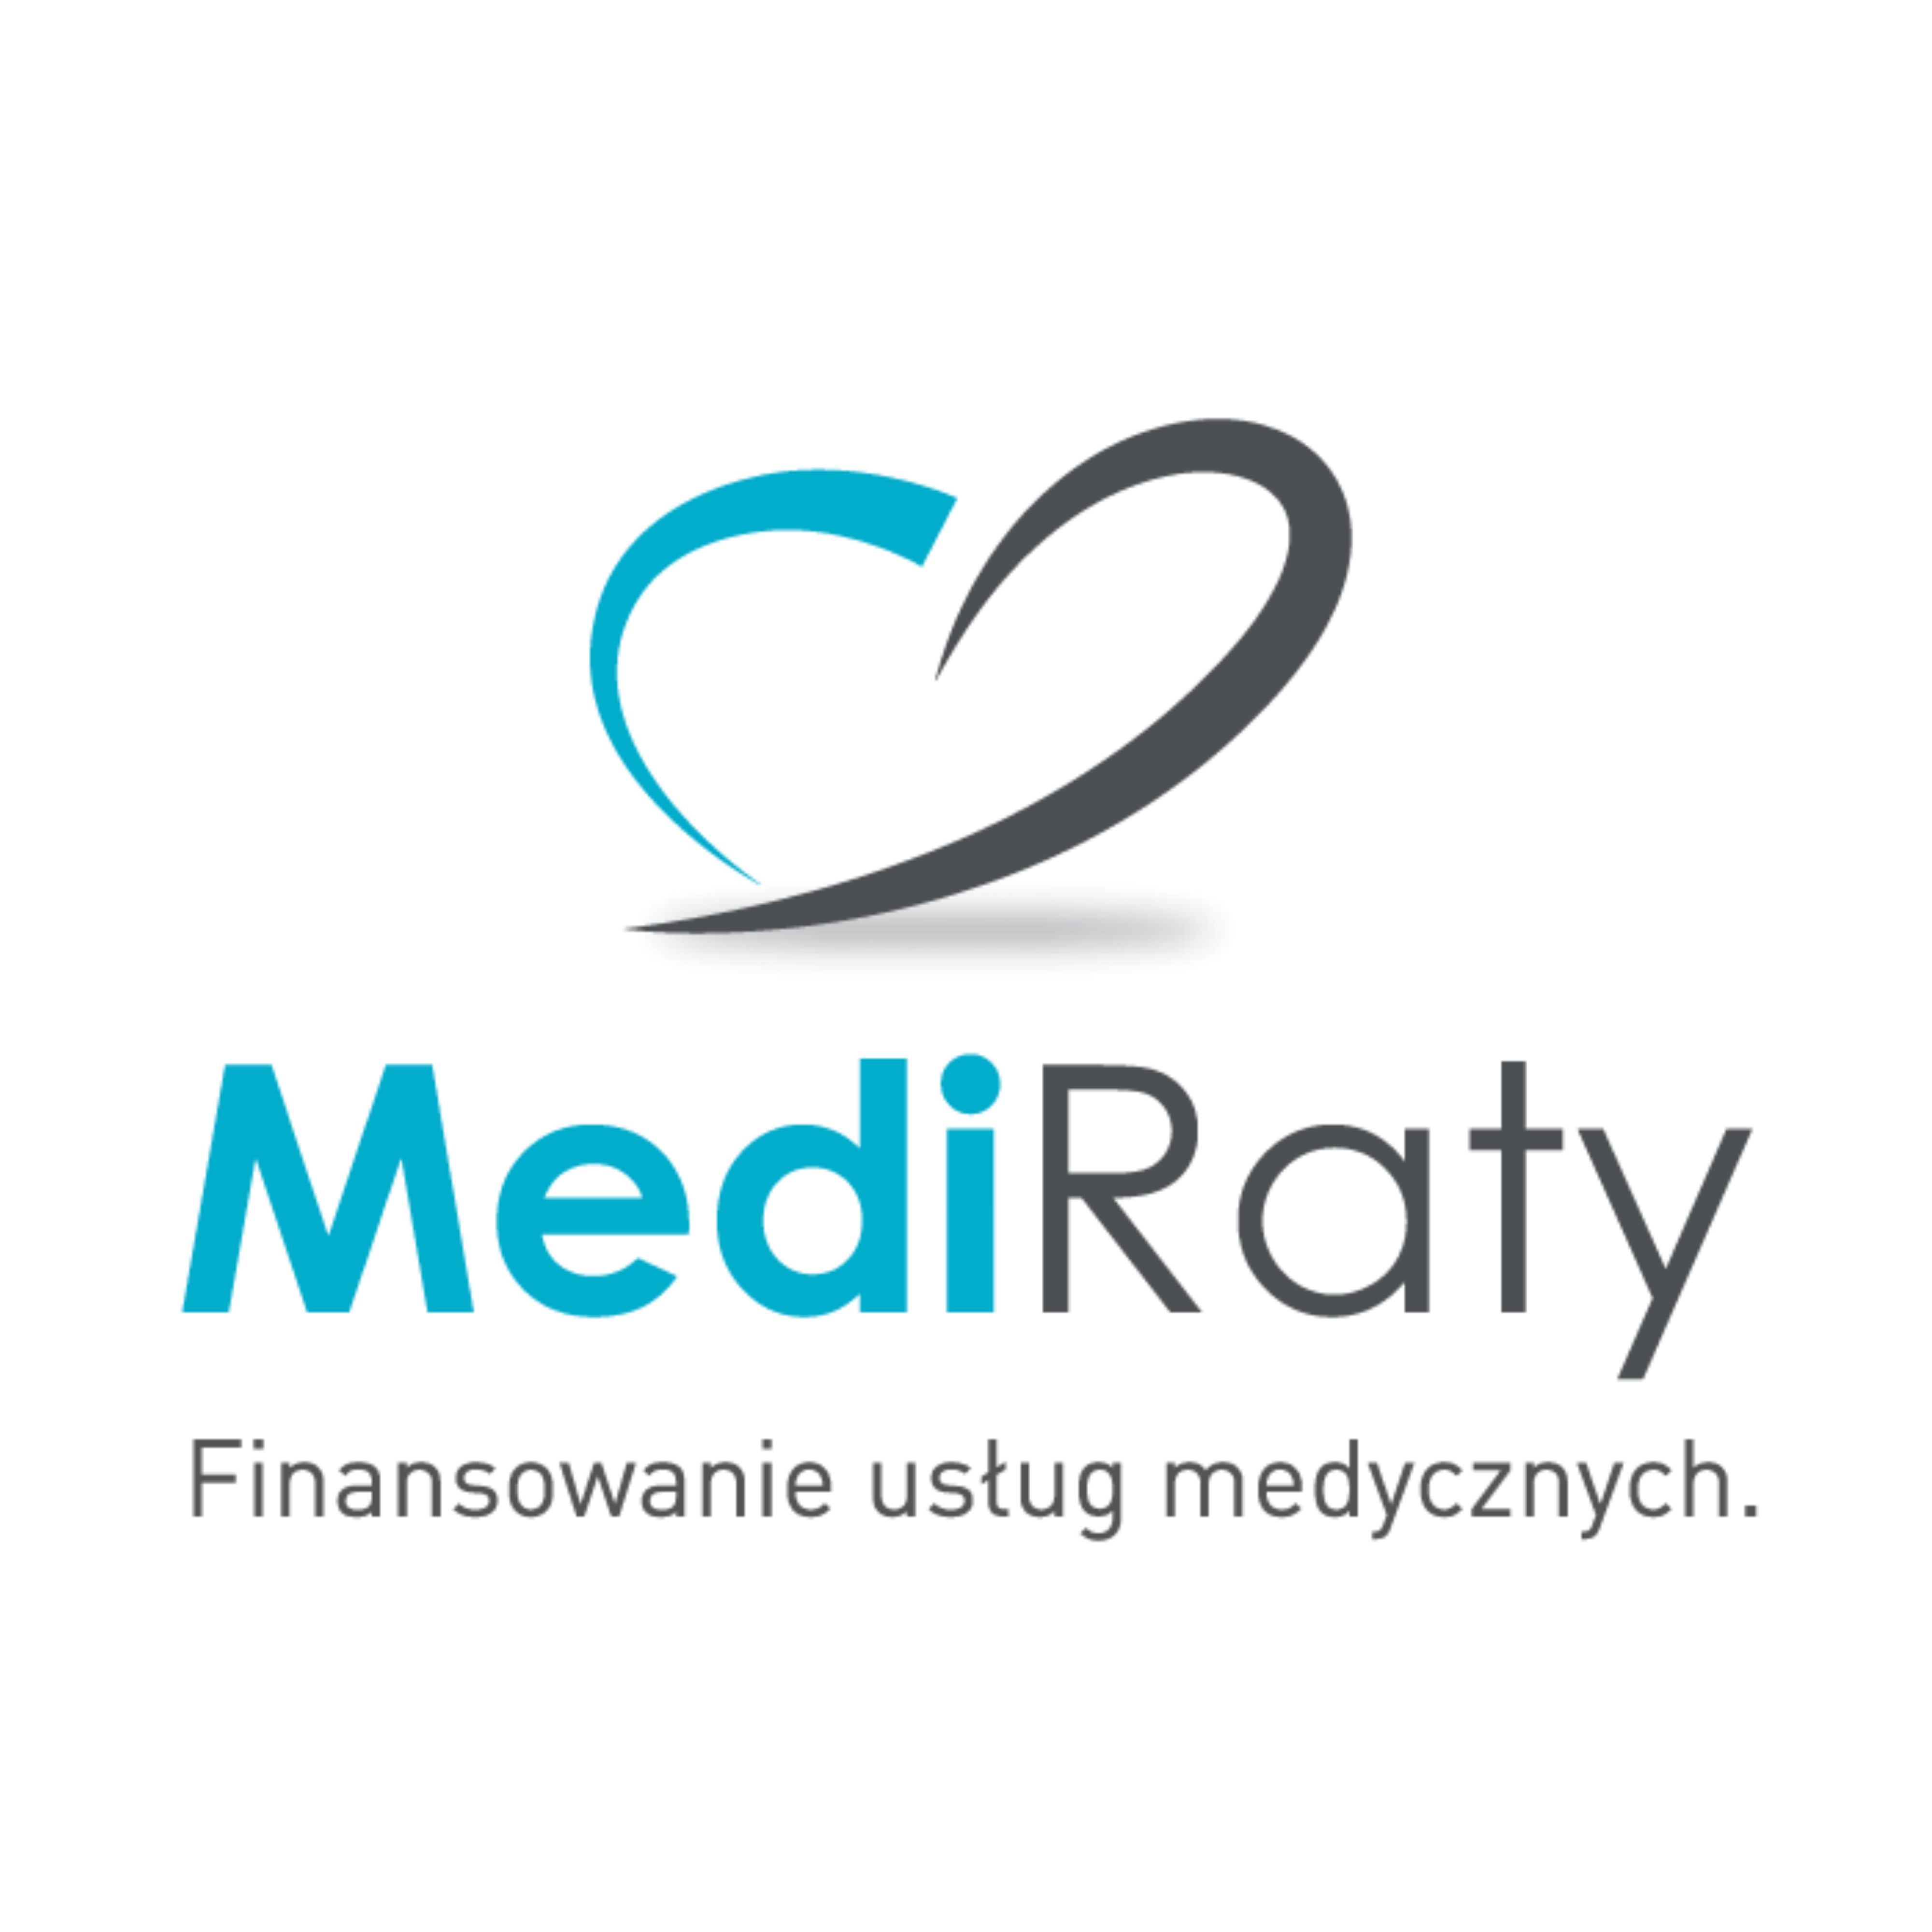 Medi raty